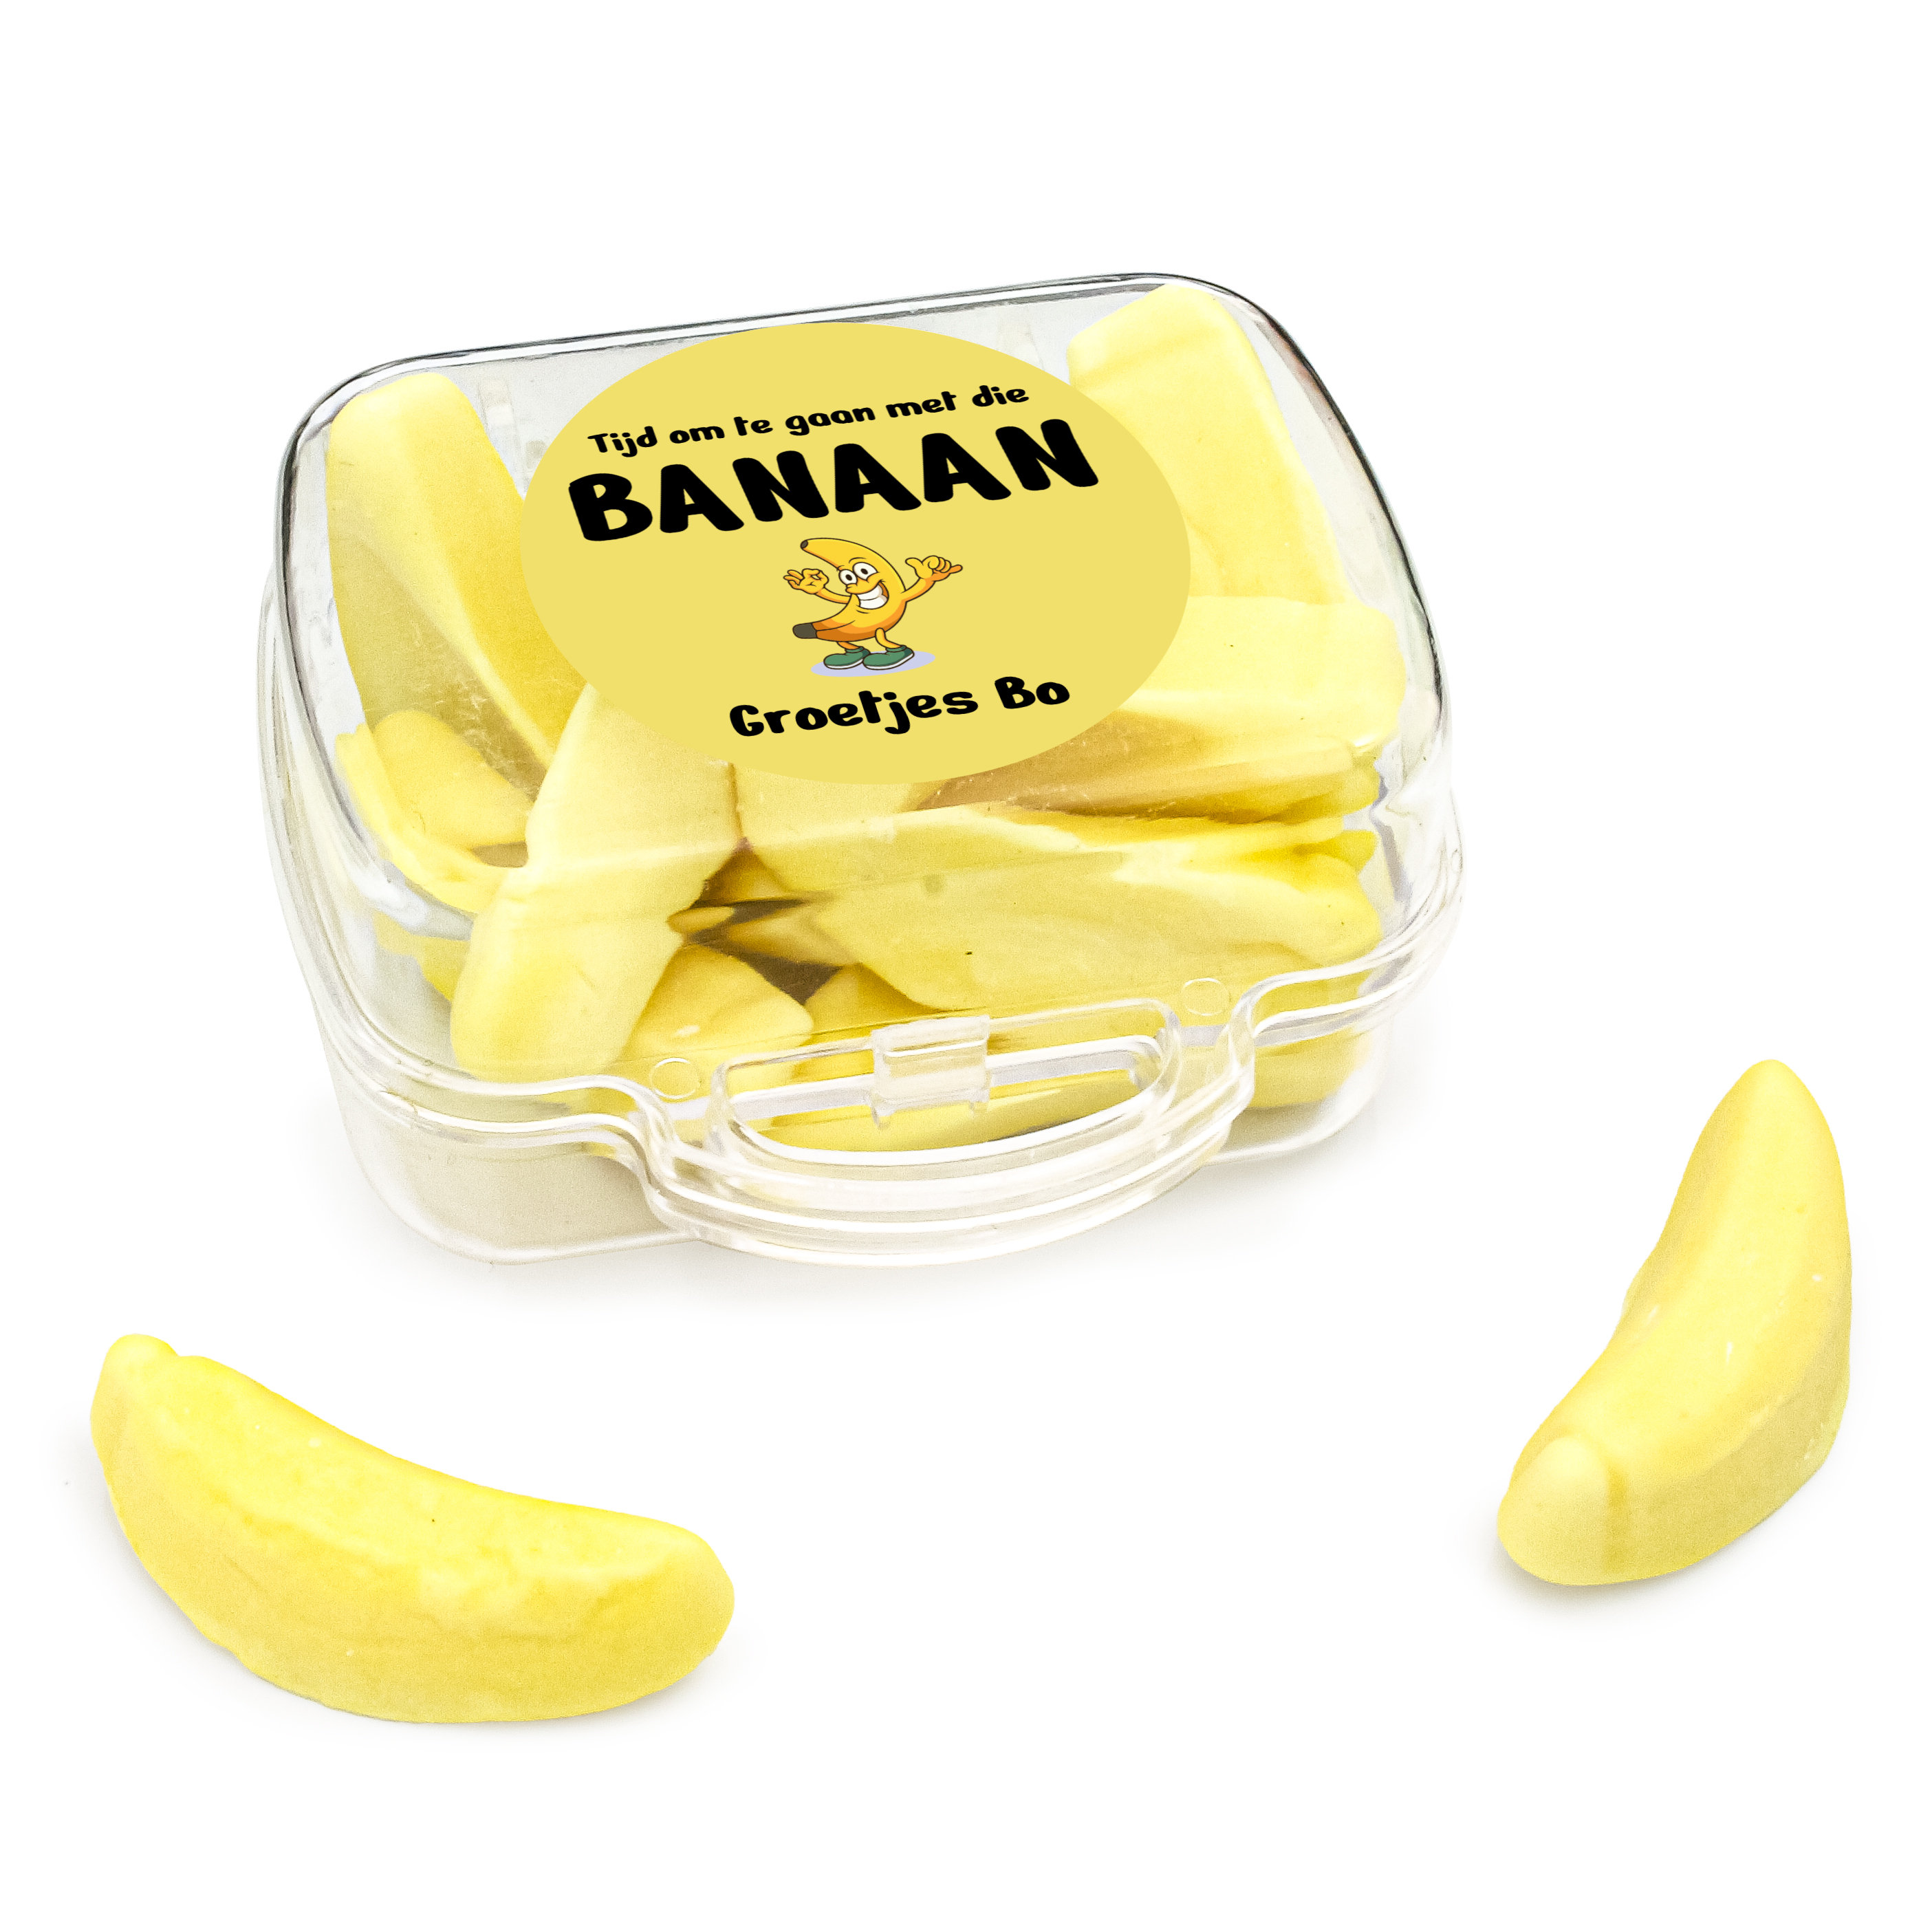 Reis koffer bedankje met banaan snoepjes